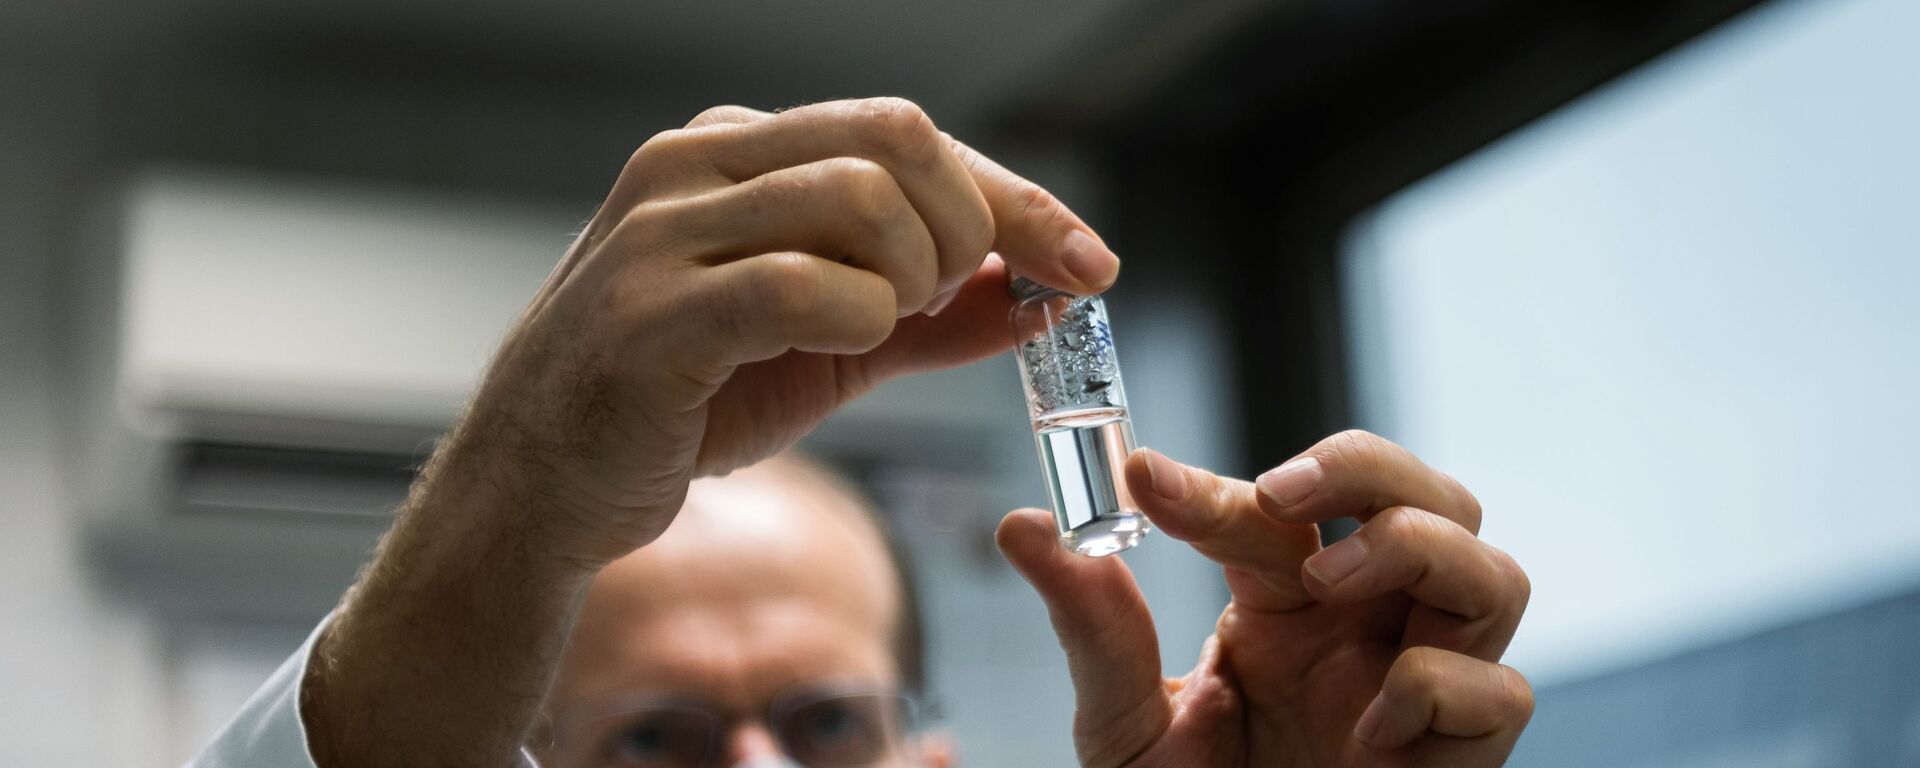 Российская вакцина от коронавируса Спутник V доставлена в Венгрию для клинических исследований (19 ноября 2020). Будапешт - Sputnik Արմենիա, 1920, 17.03.2021